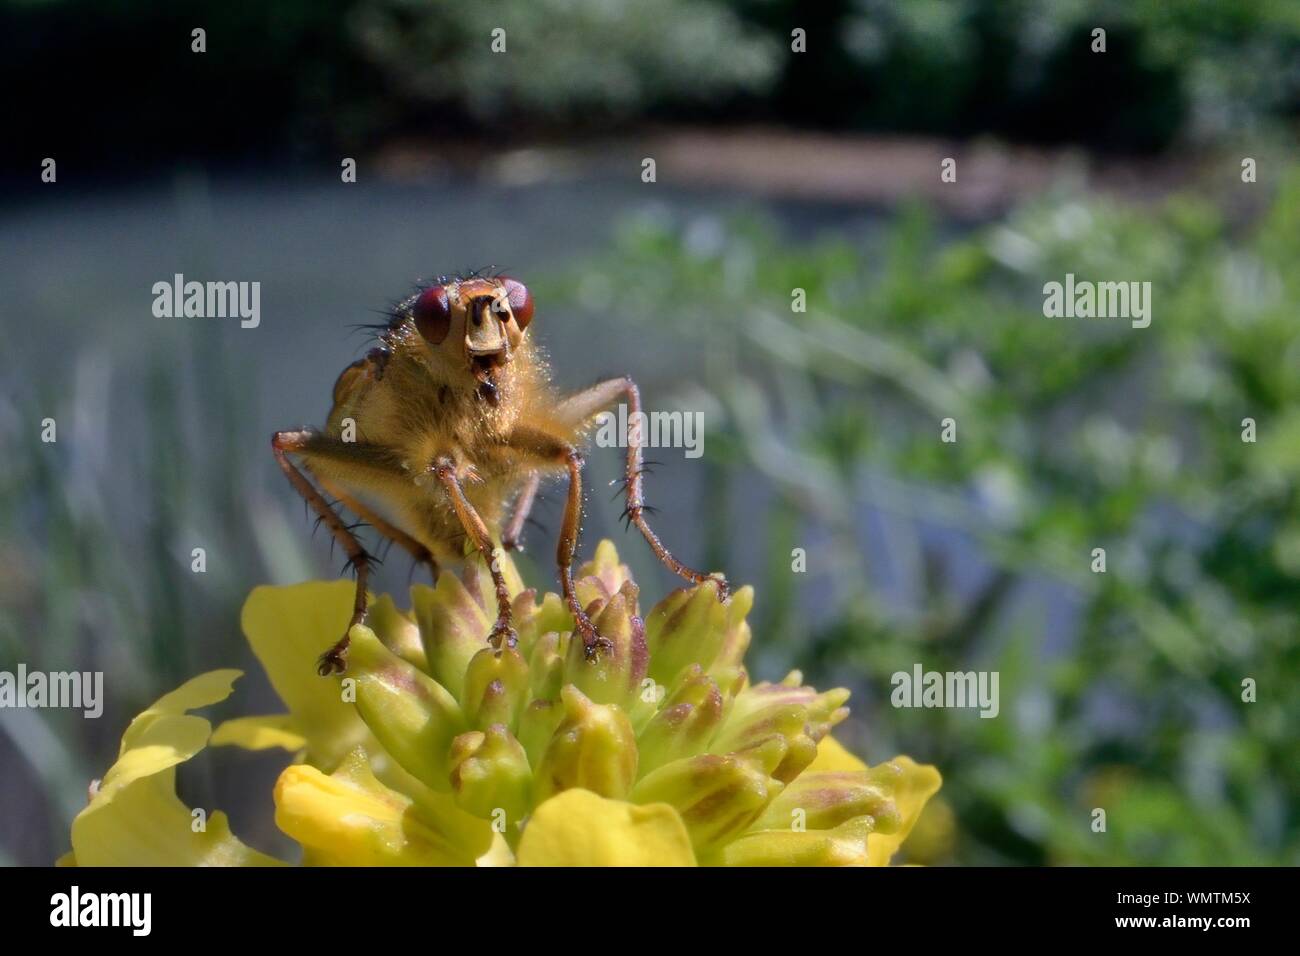 La bouse jaune fly (Scathophaga stercoraria) la chasse ses proies sur une fusée jaune flowerhead (Barbarea vulgaris) sur une berge, Wiltshire, Royaume-Uni, mai. Banque D'Images